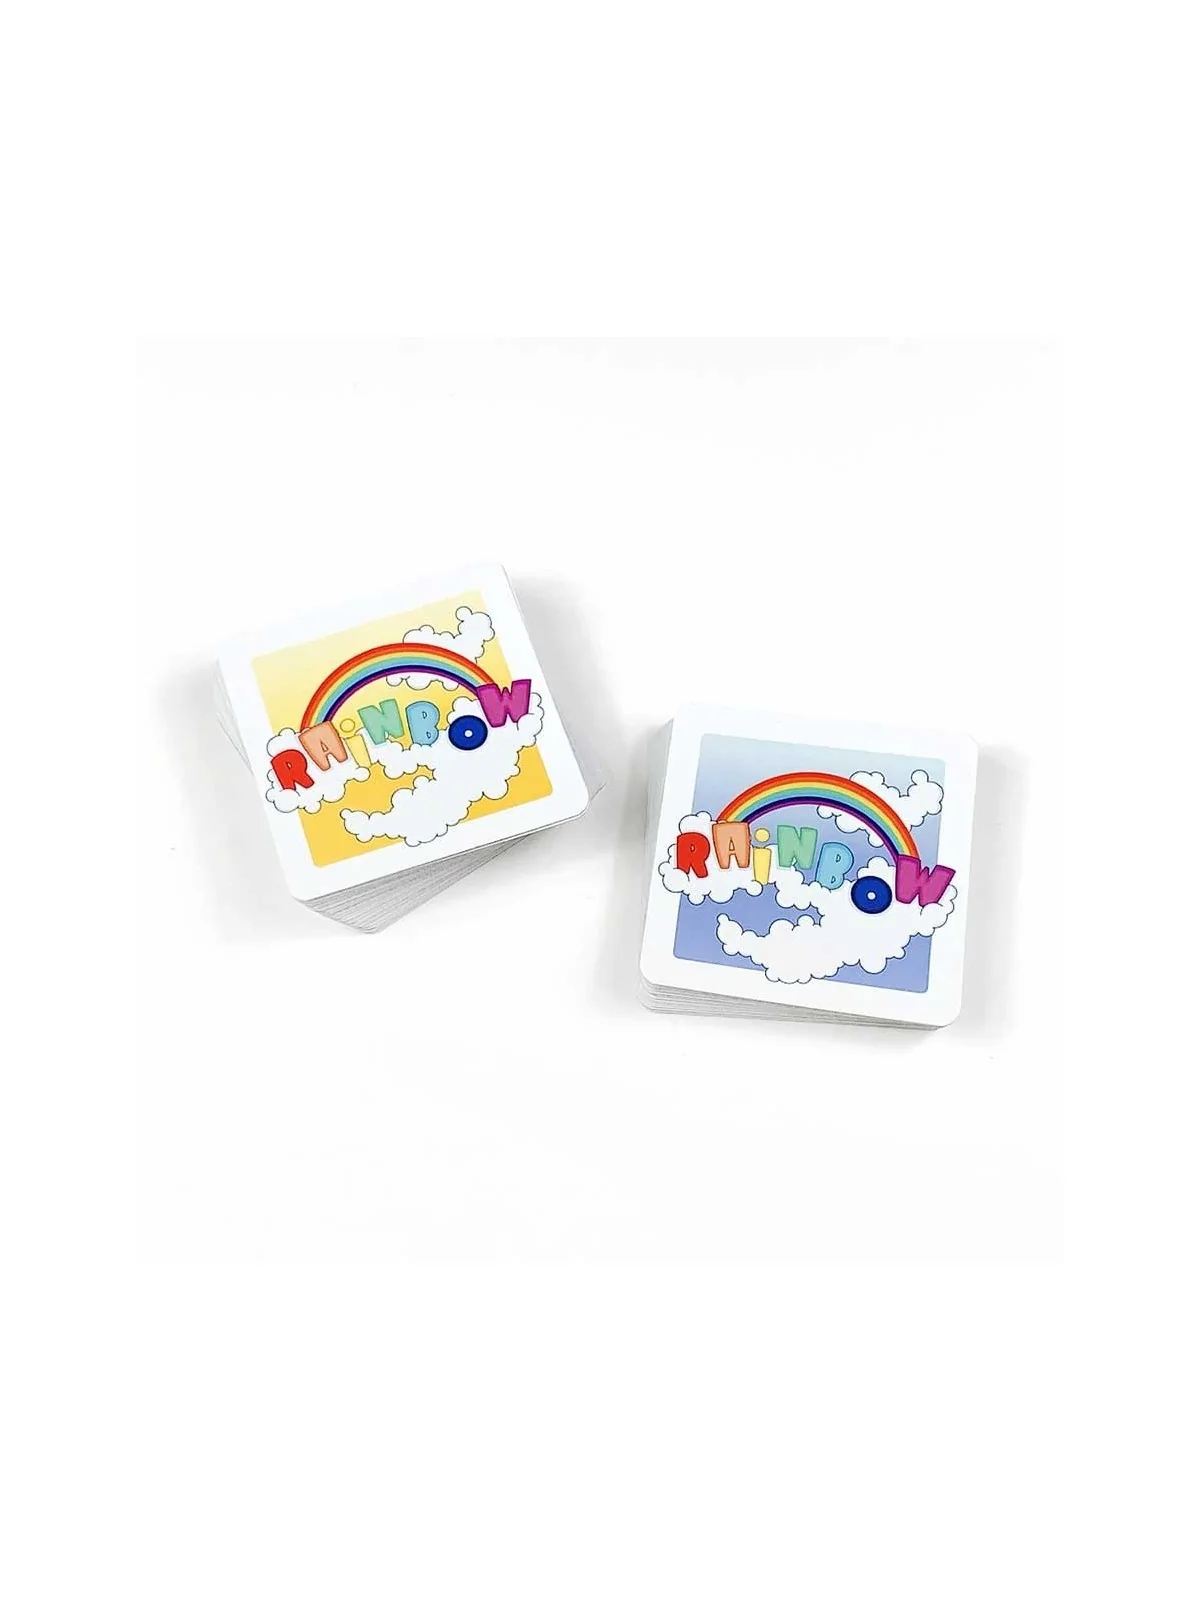 Comprar Rainbow barato al mejor precio 11,50 € de Atomo Games